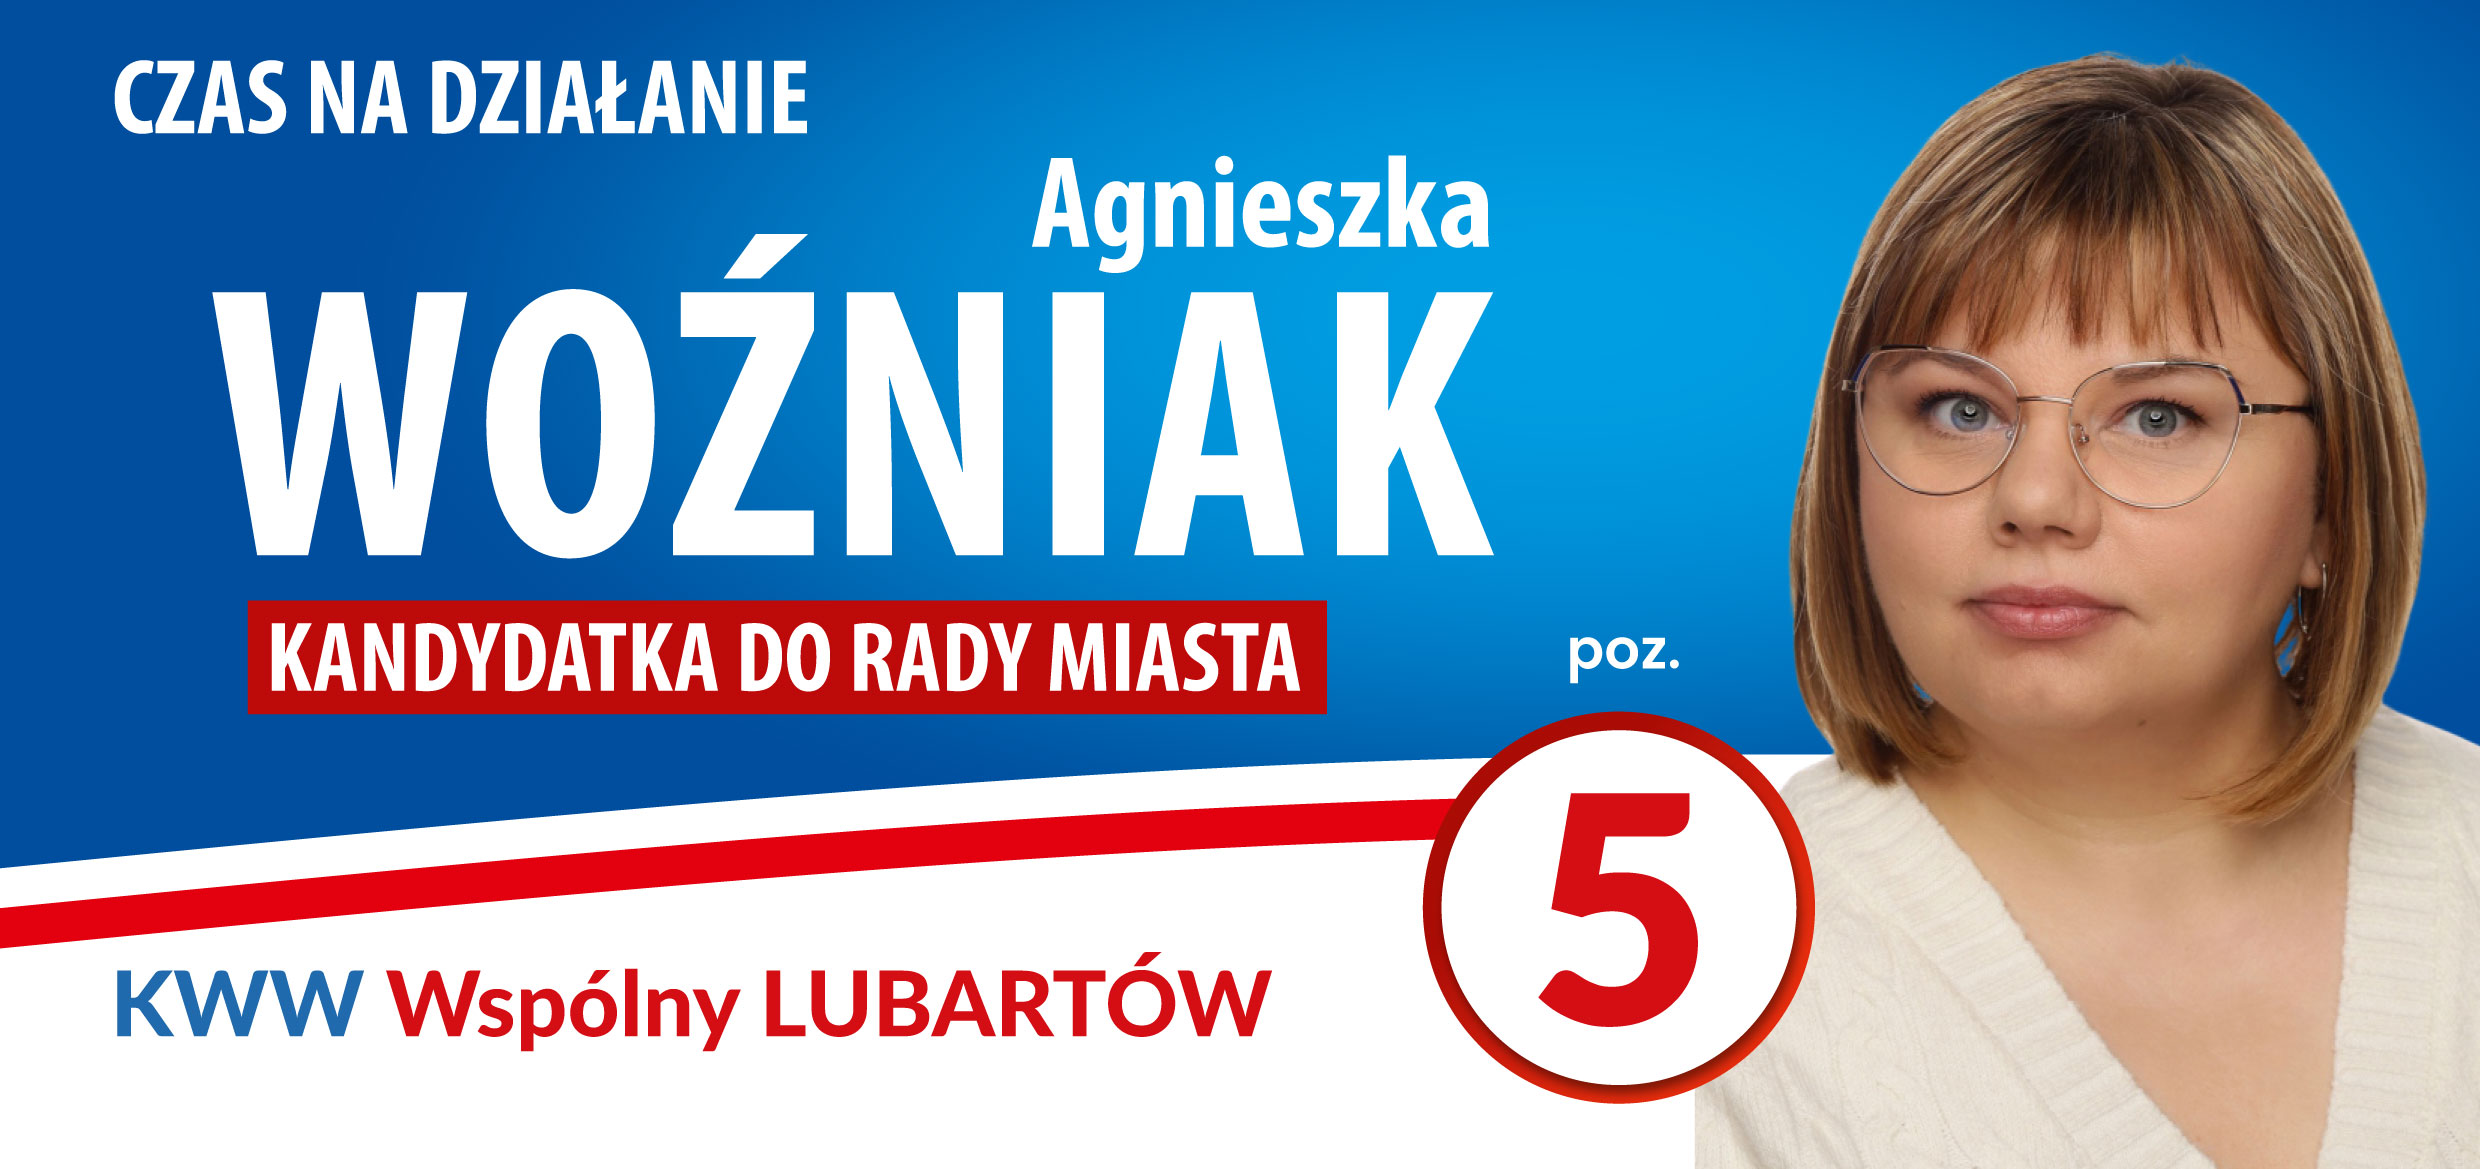 WOŹNIAK_Agnieszka-1